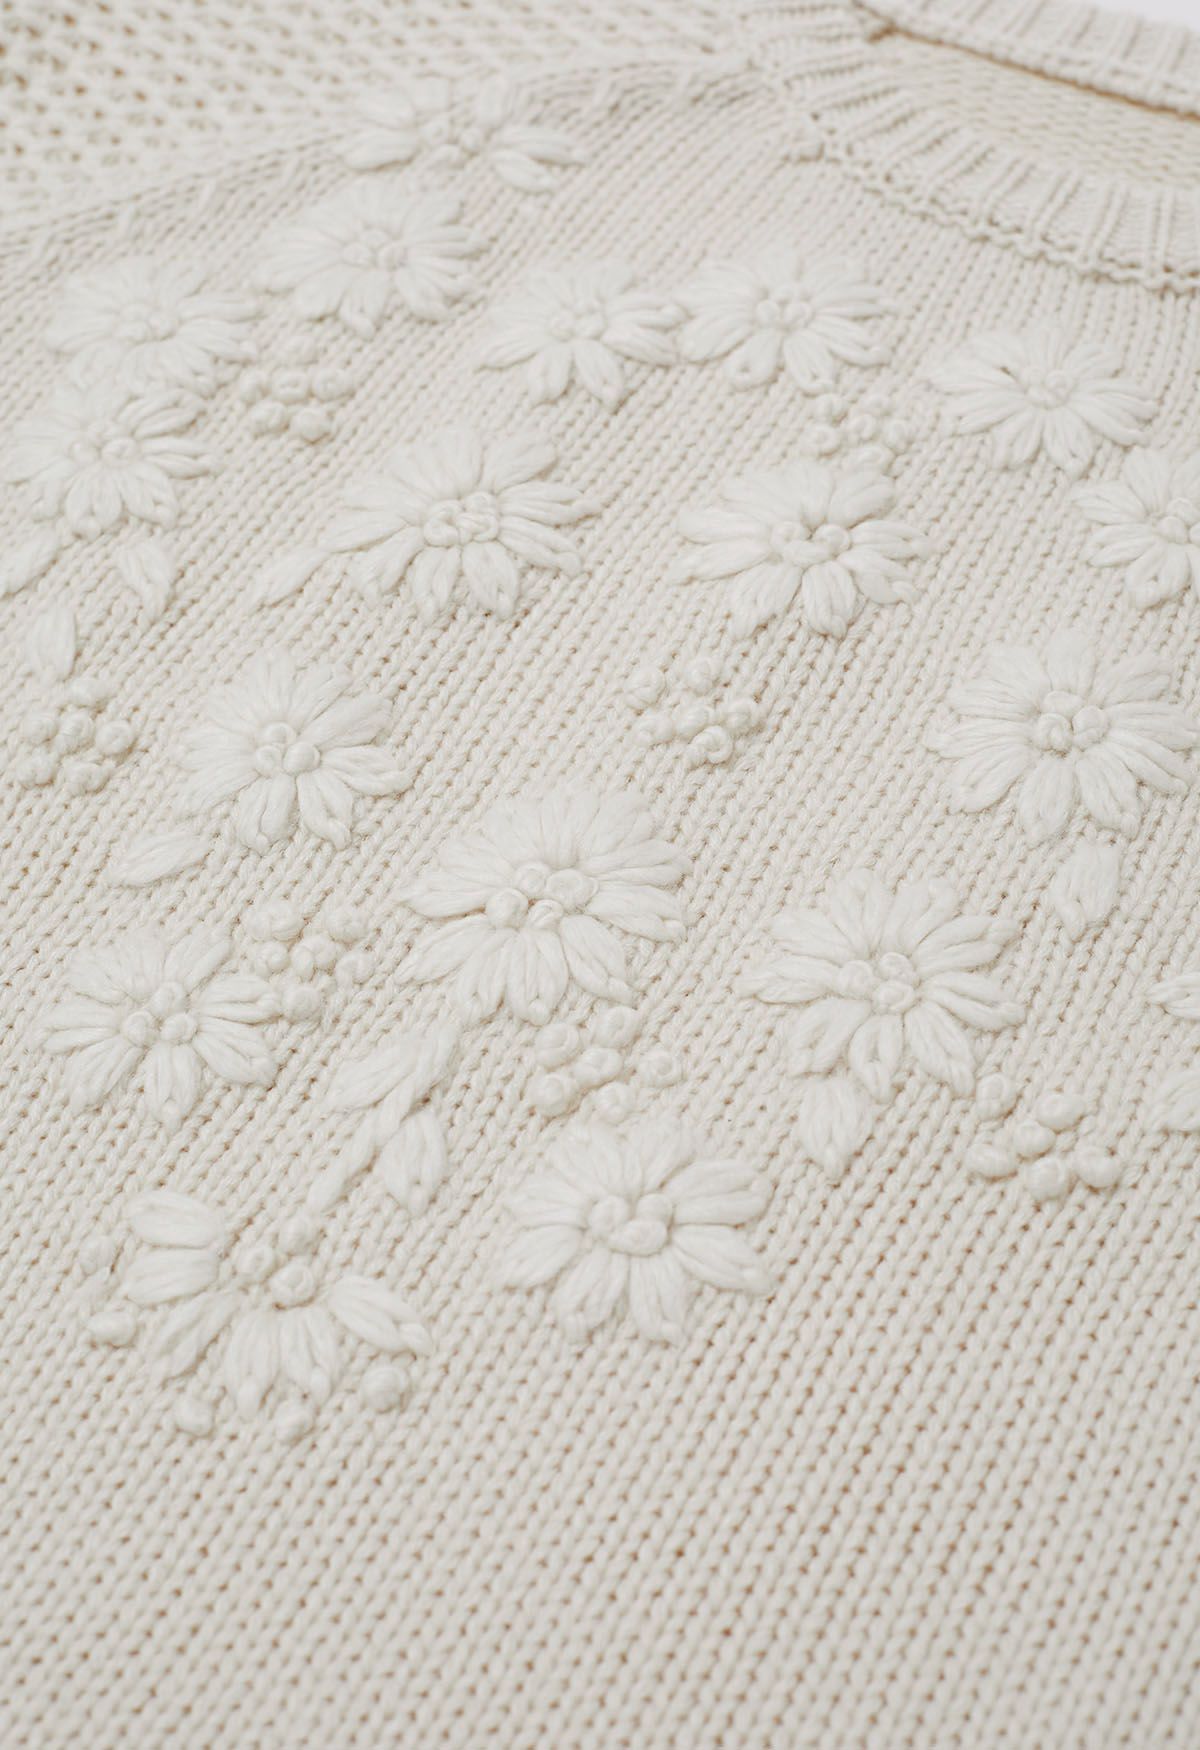 Suéter de punto con patrón en contraste de flores bordadas a mano en marfil